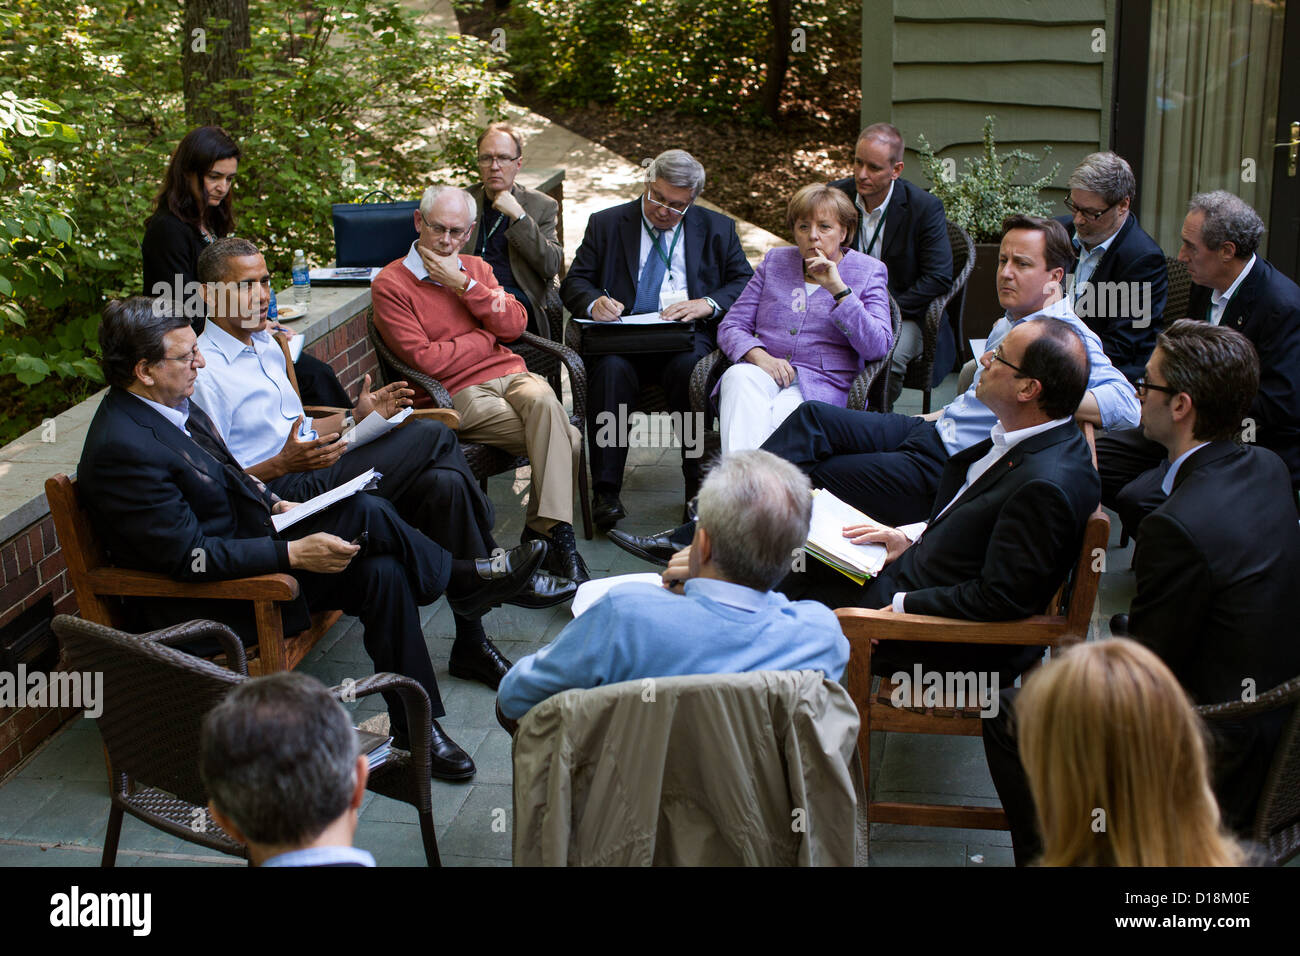 El presidente Barack Obama se reúne con los líderes de la Eurozona en el Laurel Cabin patio durante la Cumbre del G8 en Camp David, Maryland, 19 de mayo Foto de stock